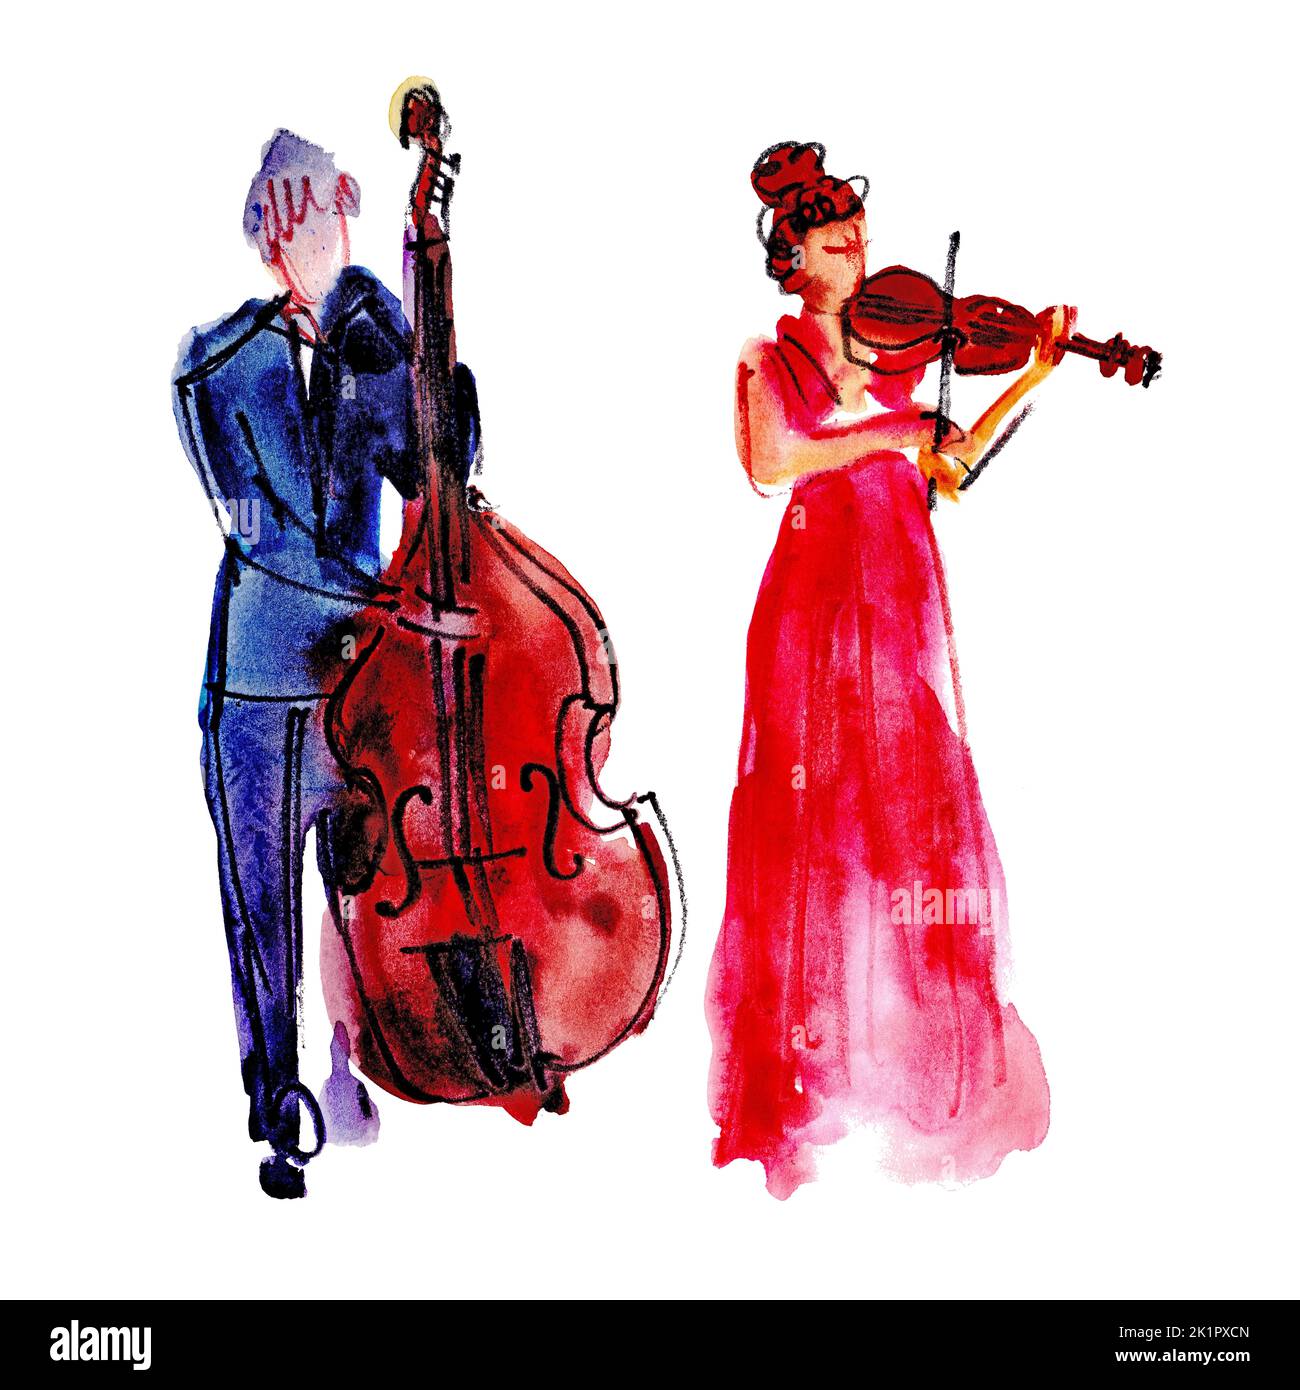 Aquarelle dessin à la main: Groupe musical, homme avec contrebasse et femme avec violon Banque D'Images